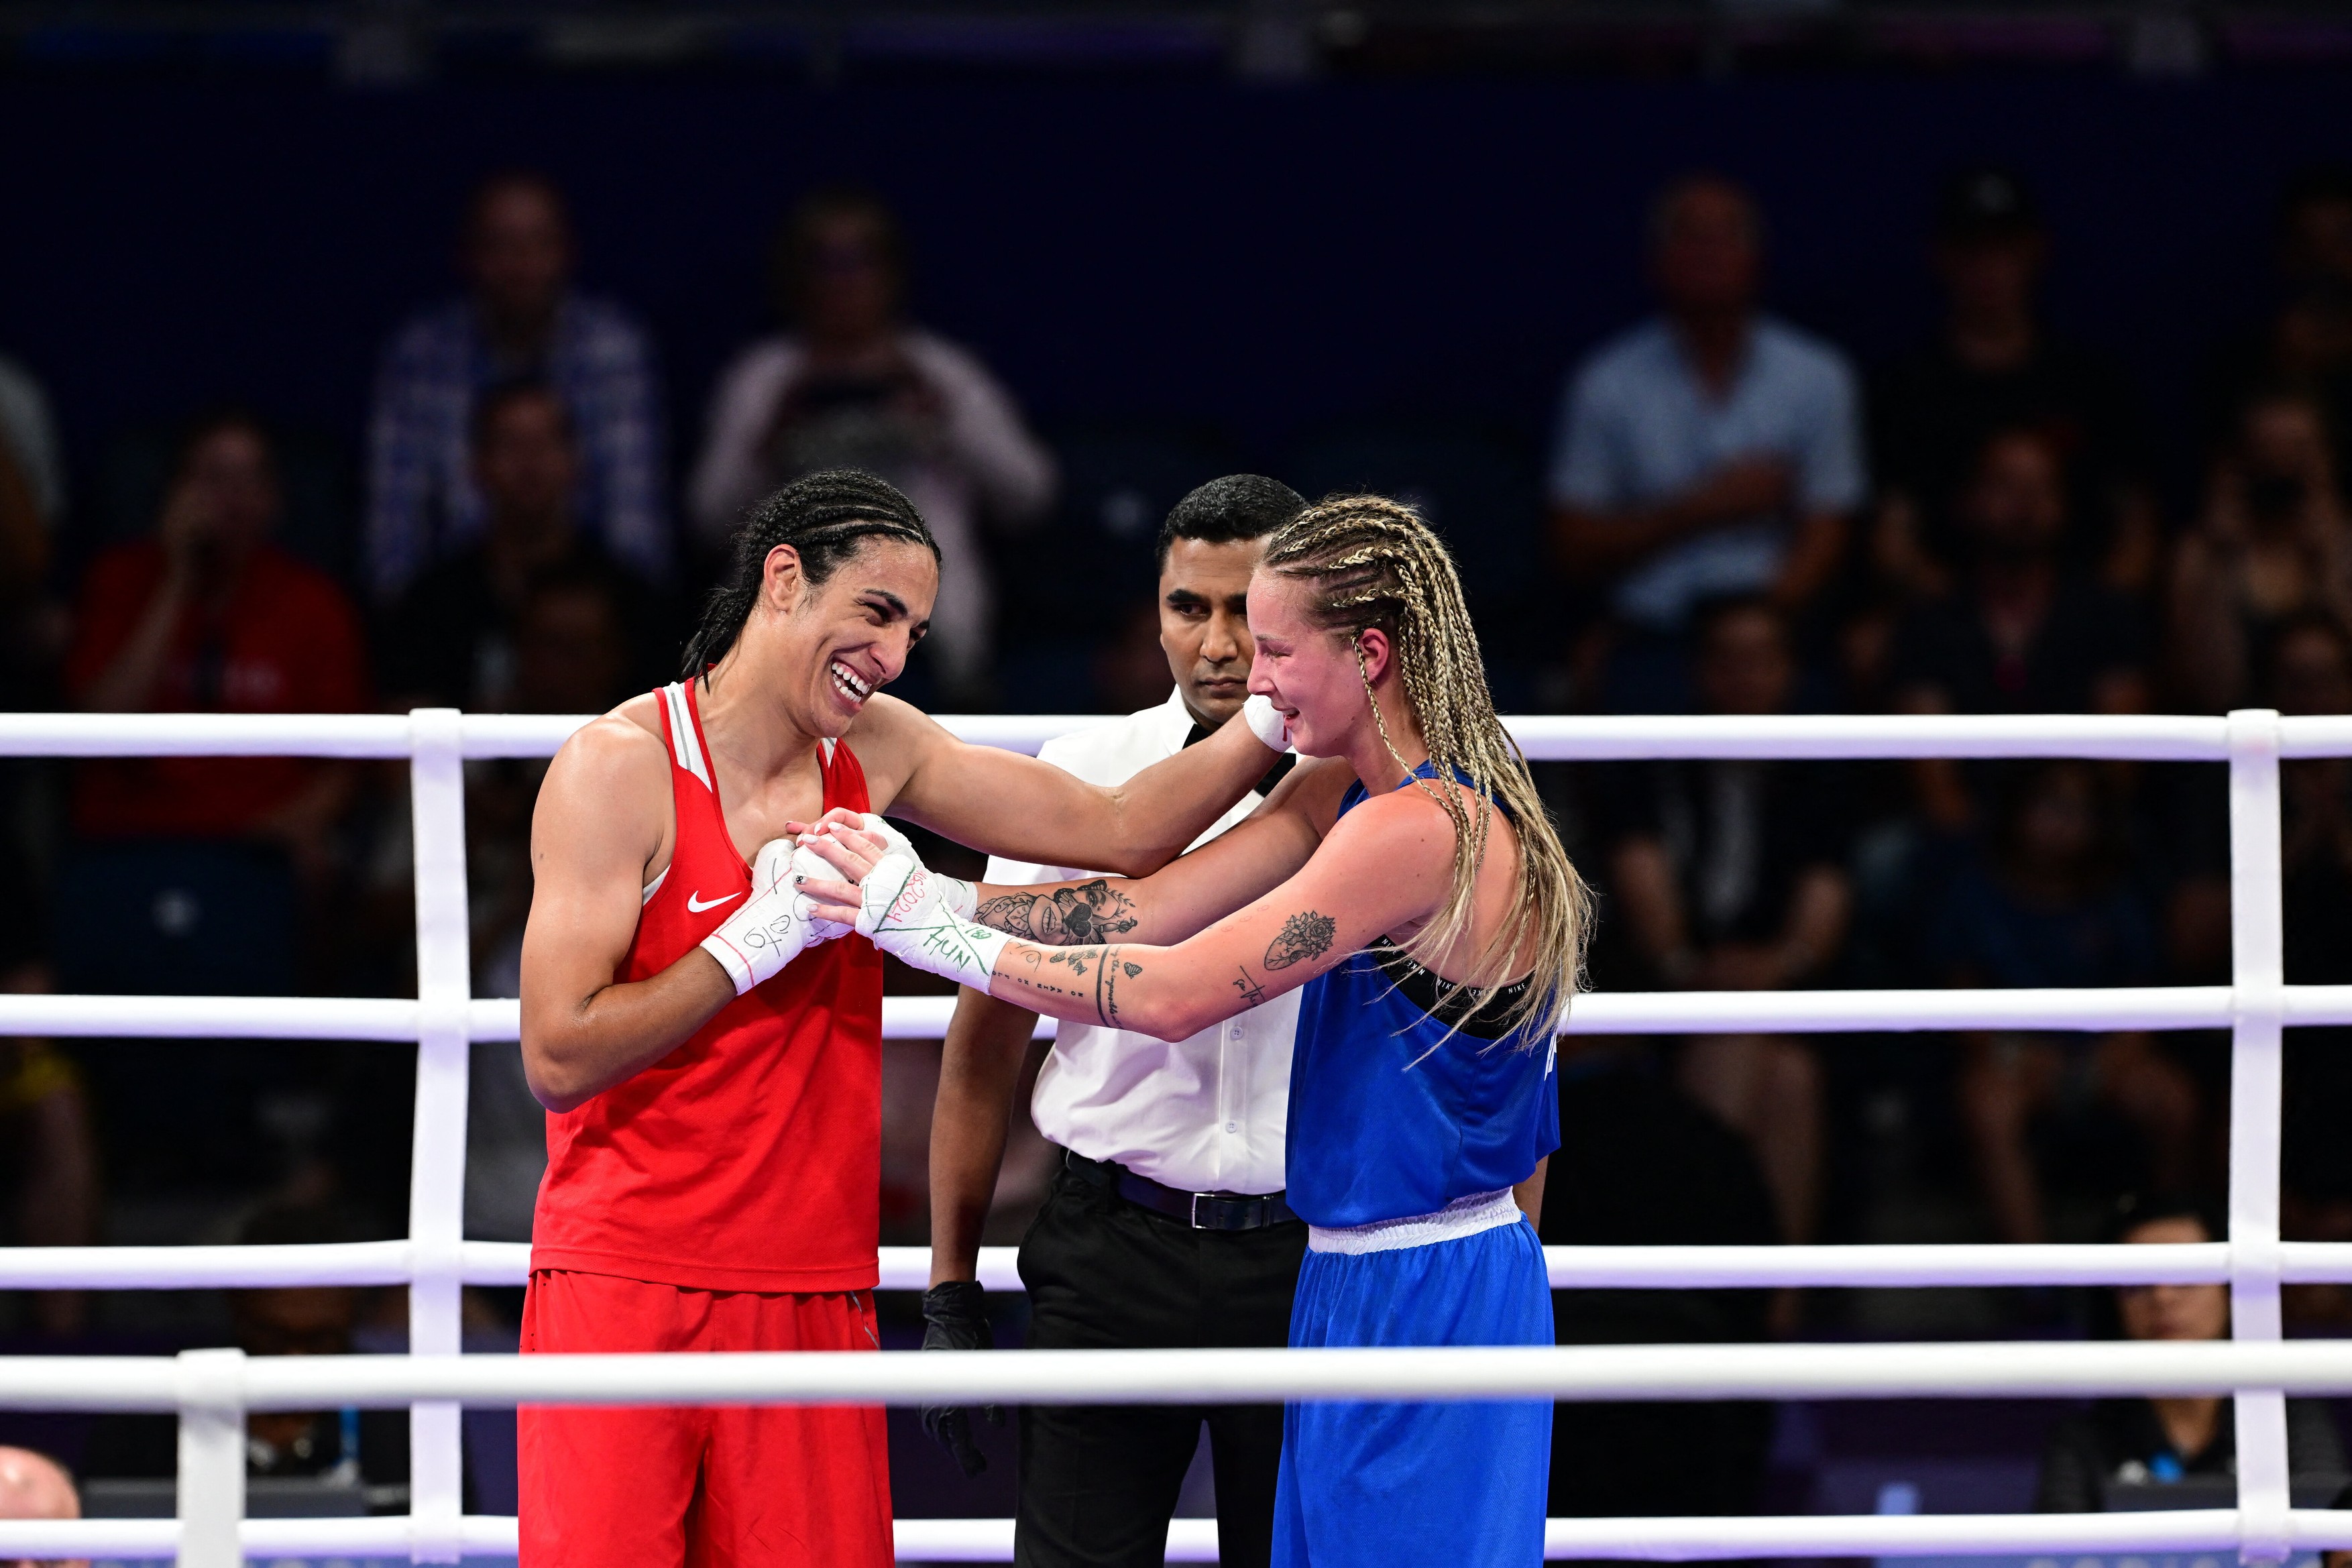 Ungurii continuă scandalul: titlul controversat dat după ce Imane Khelif le-a învins sportiva la Jocurile Olimpice